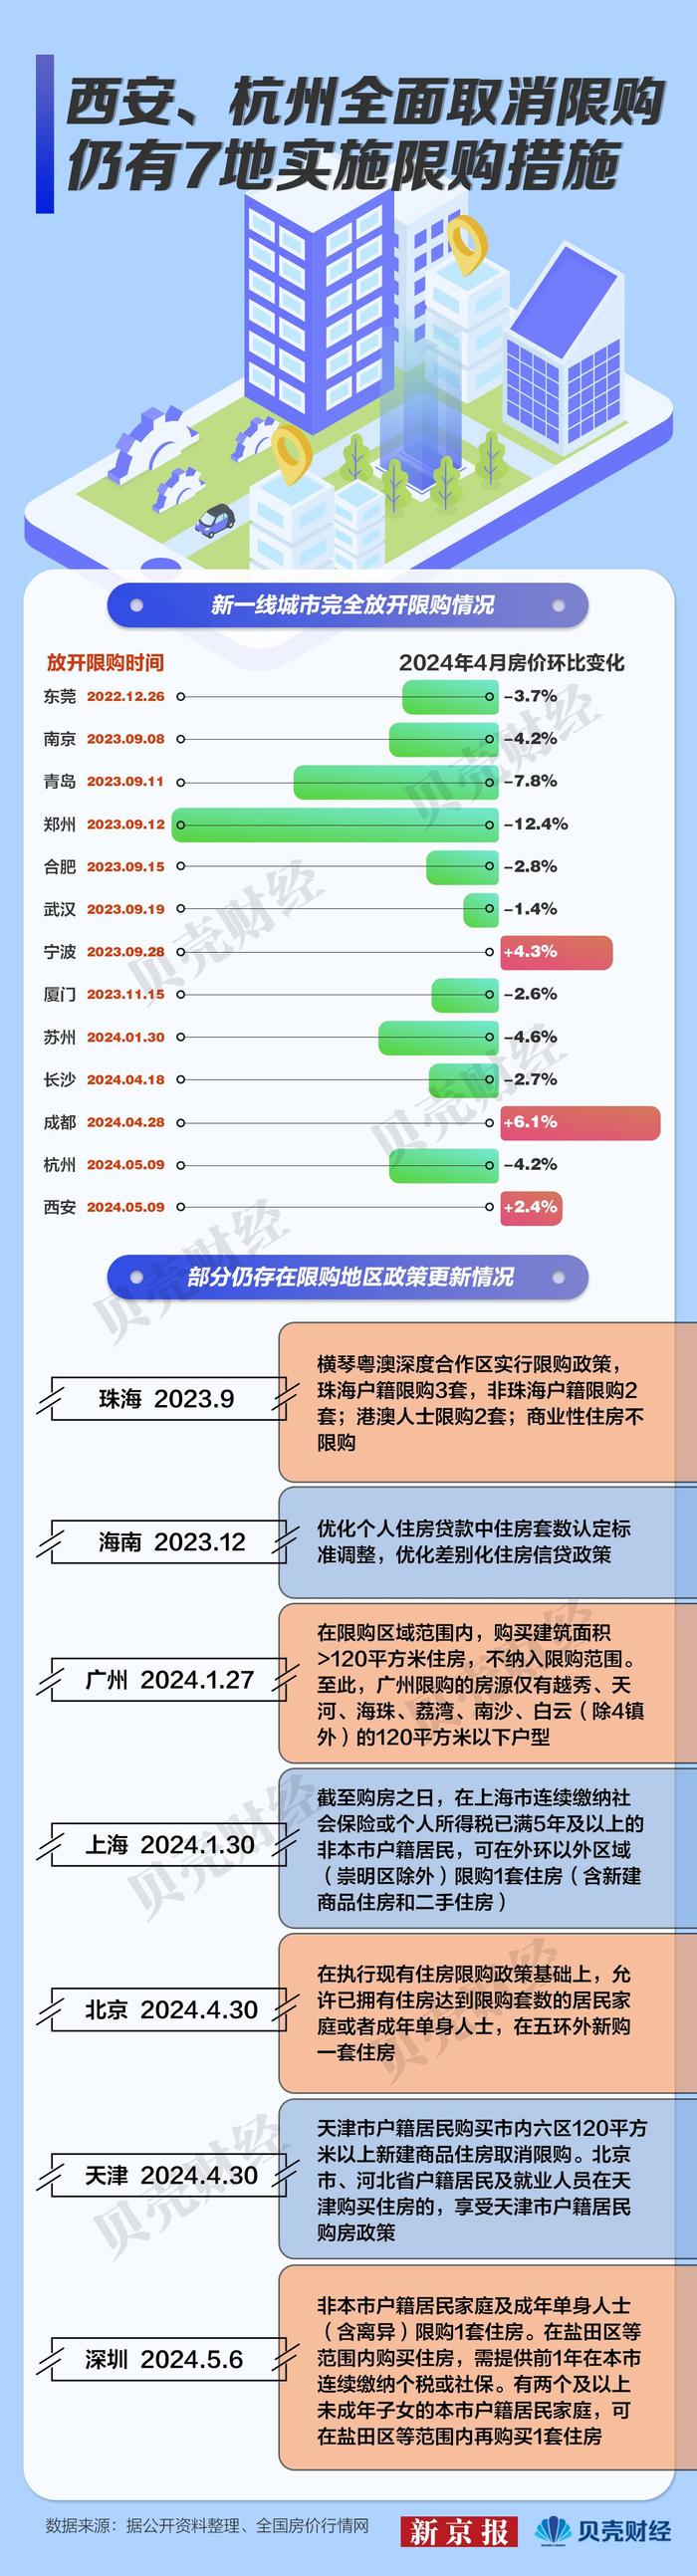 一图看懂｜西安、杭州全面取消住房限购 仍有7地实施限购措施